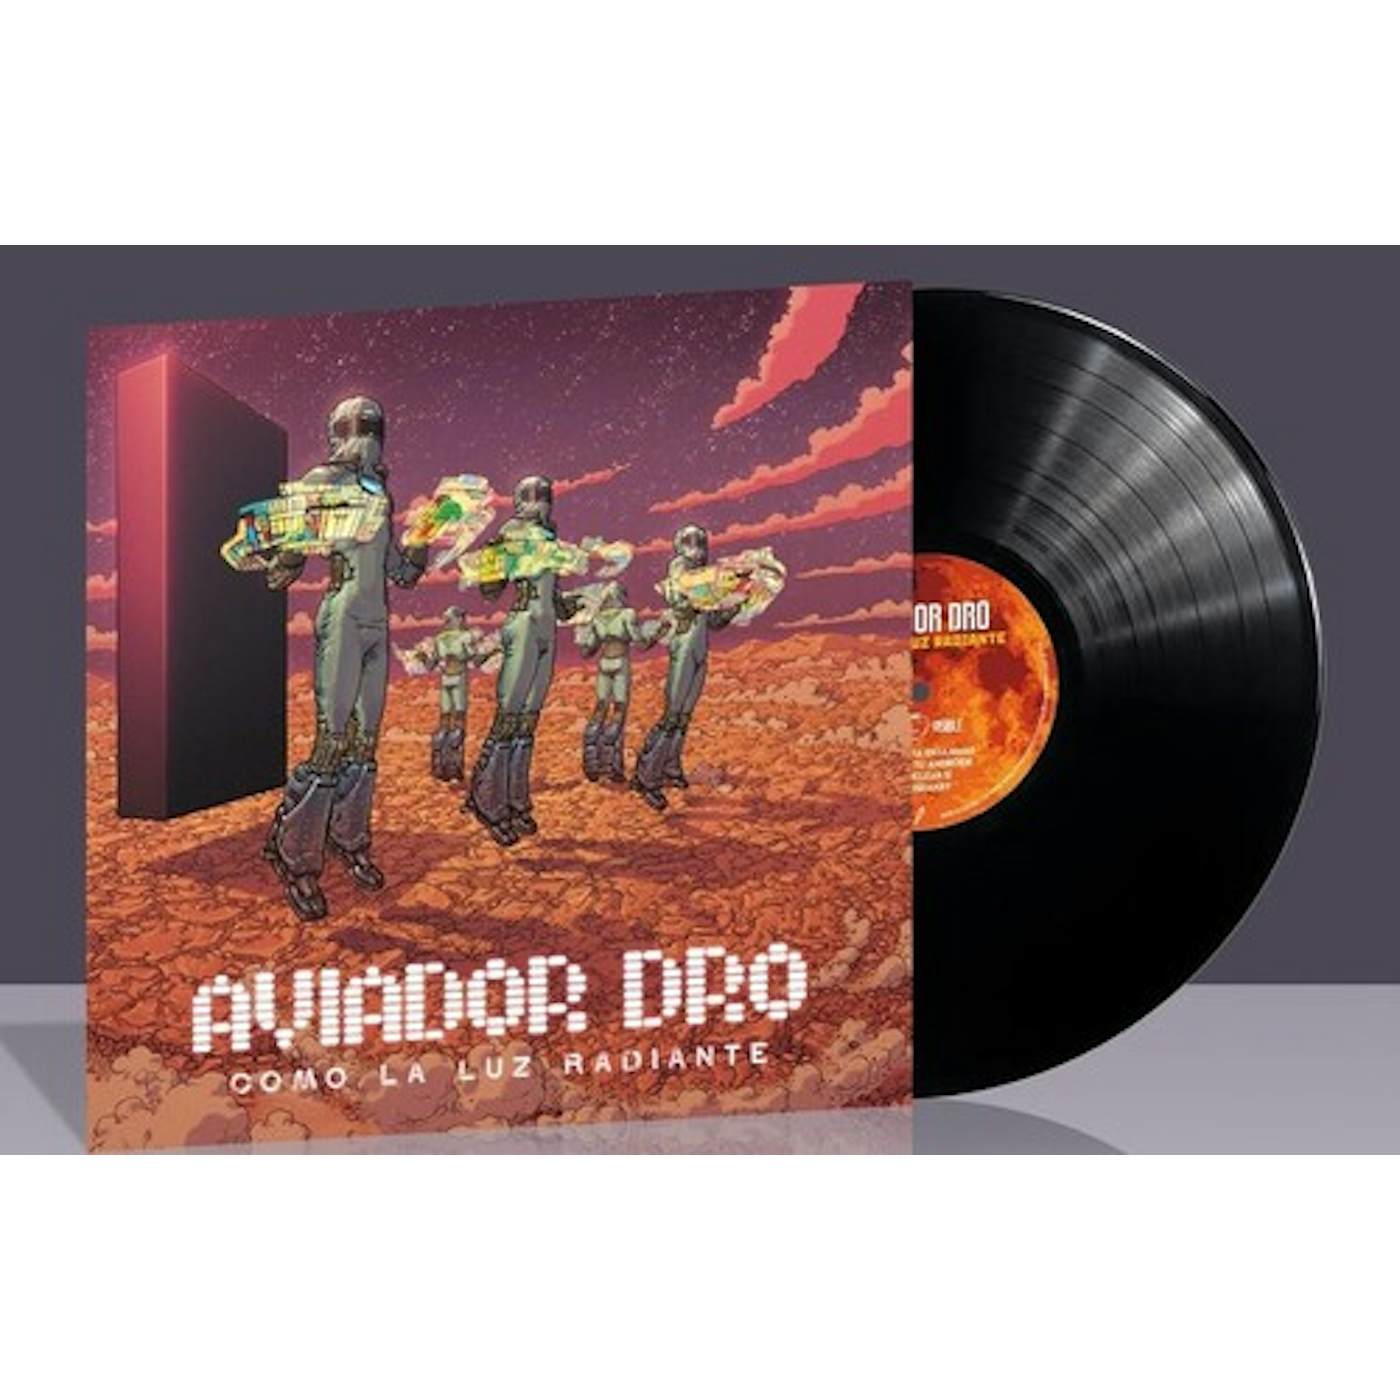 Aviador Dro Como La Luz Radiante Vinyl Record